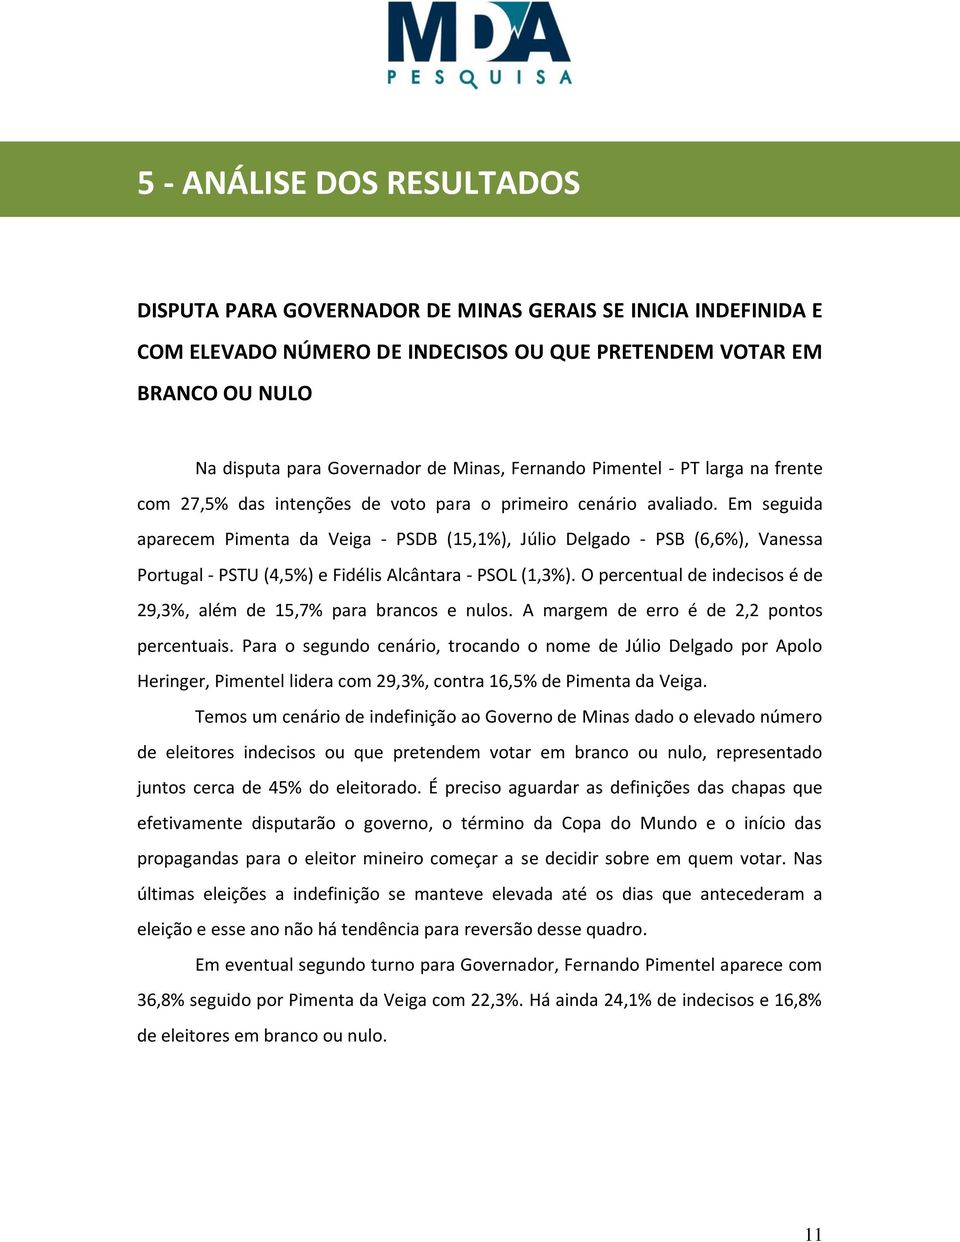 Em seguida aparecem Pimenta da Veiga - PSDB (15,1%), Júlio Delgado - PSB (6,6%), Vanessa Portugal - PSTU (4,5%) e Fidélis Alcântara - PSOL (1,3%).